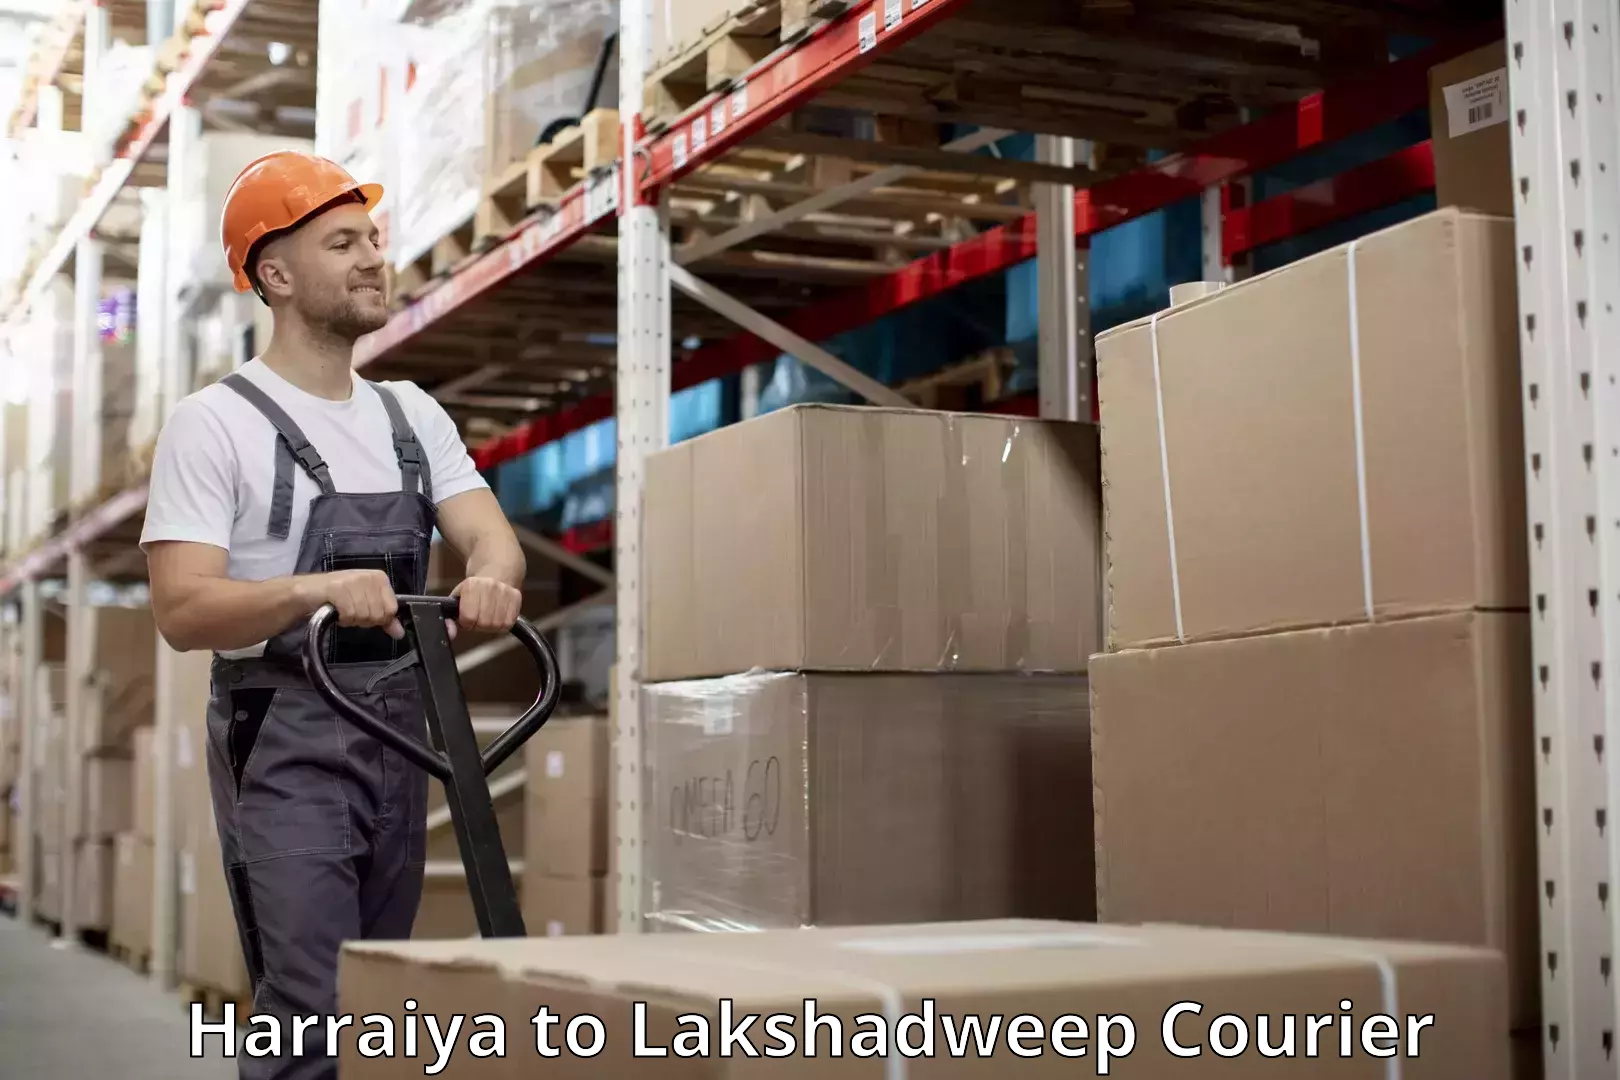 Luggage shipment specialists Harraiya to Lakshadweep